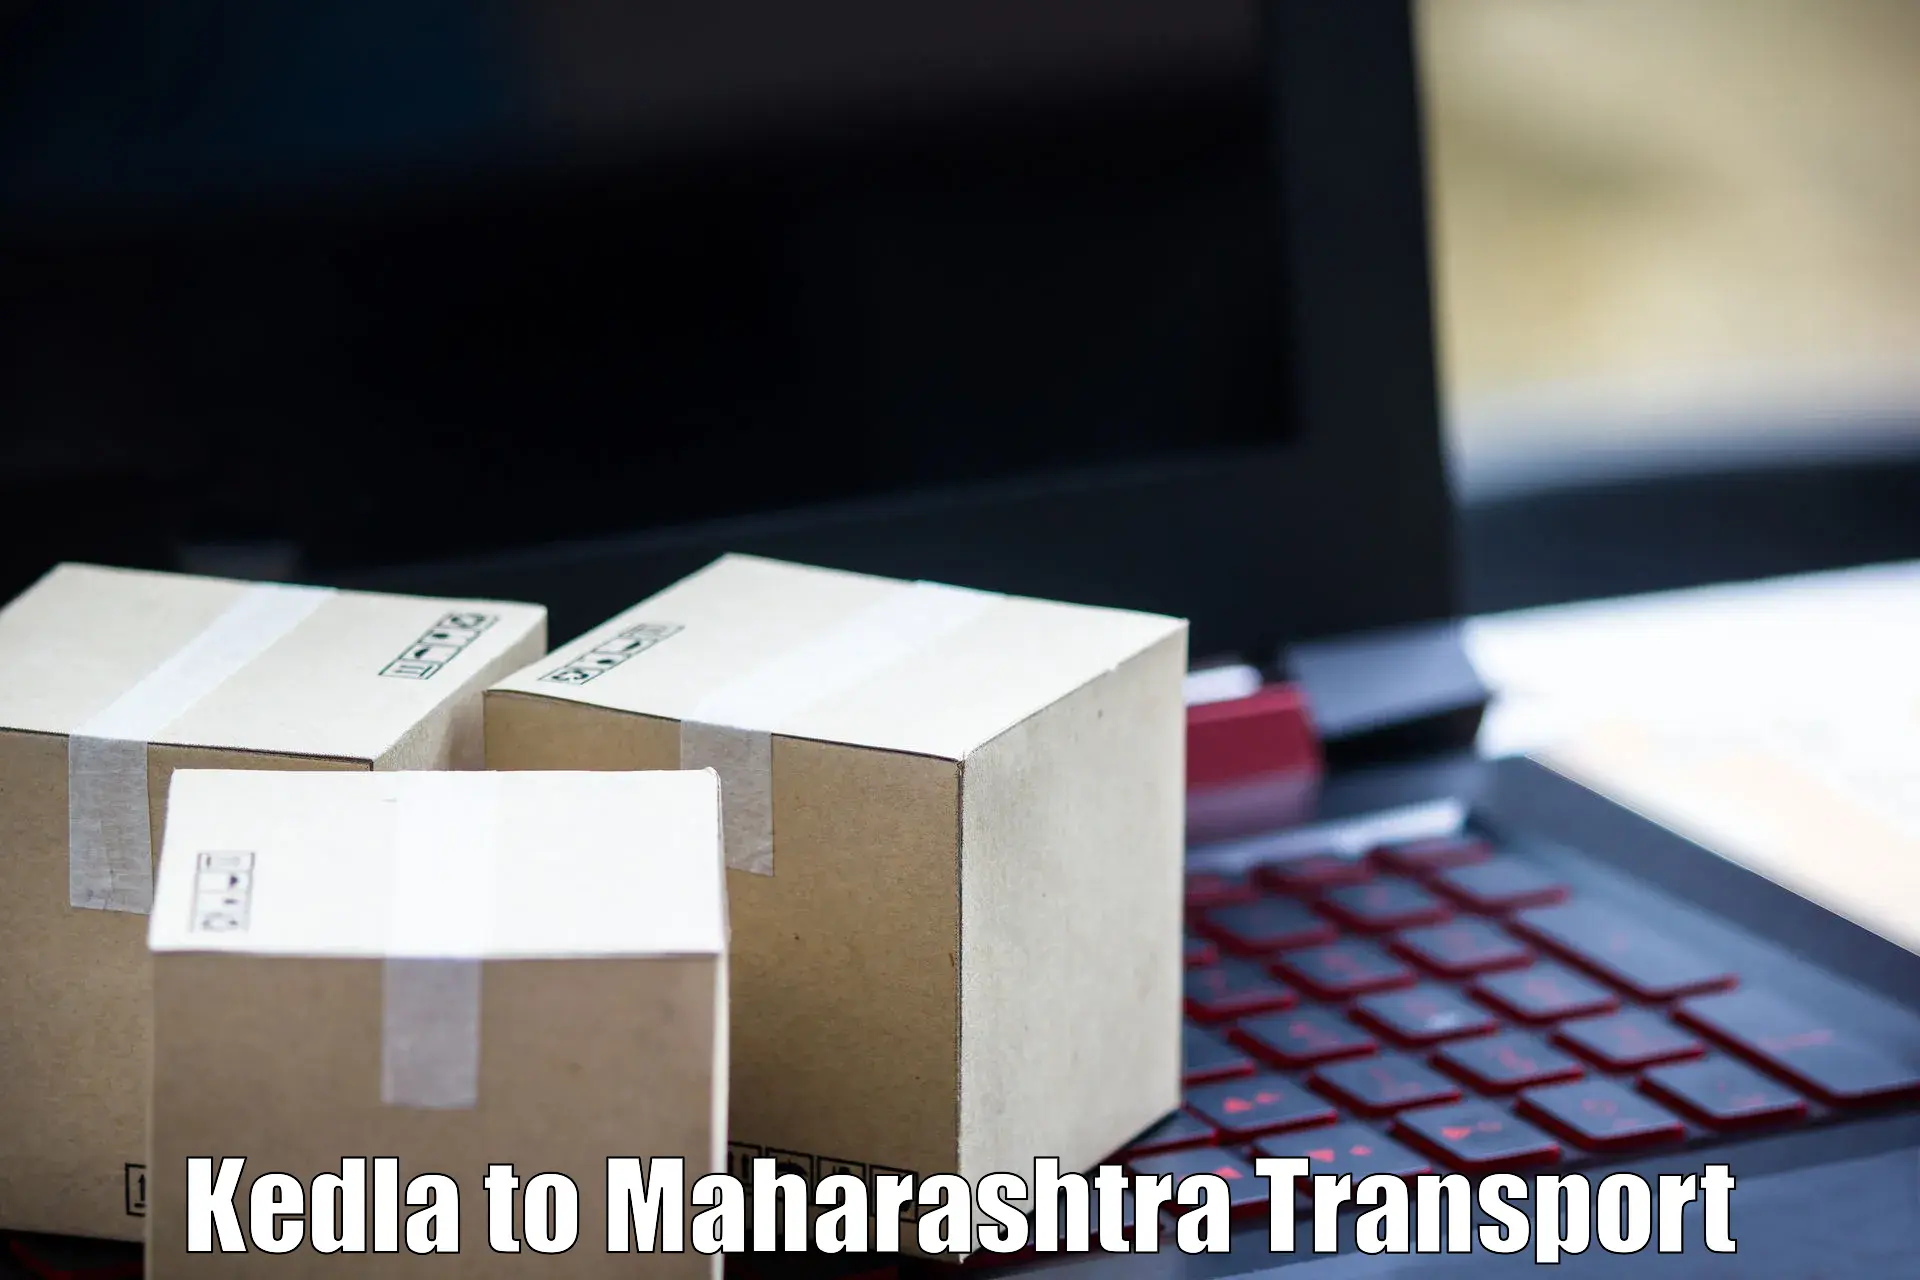 Shipping partner Kedla to Maharashtra